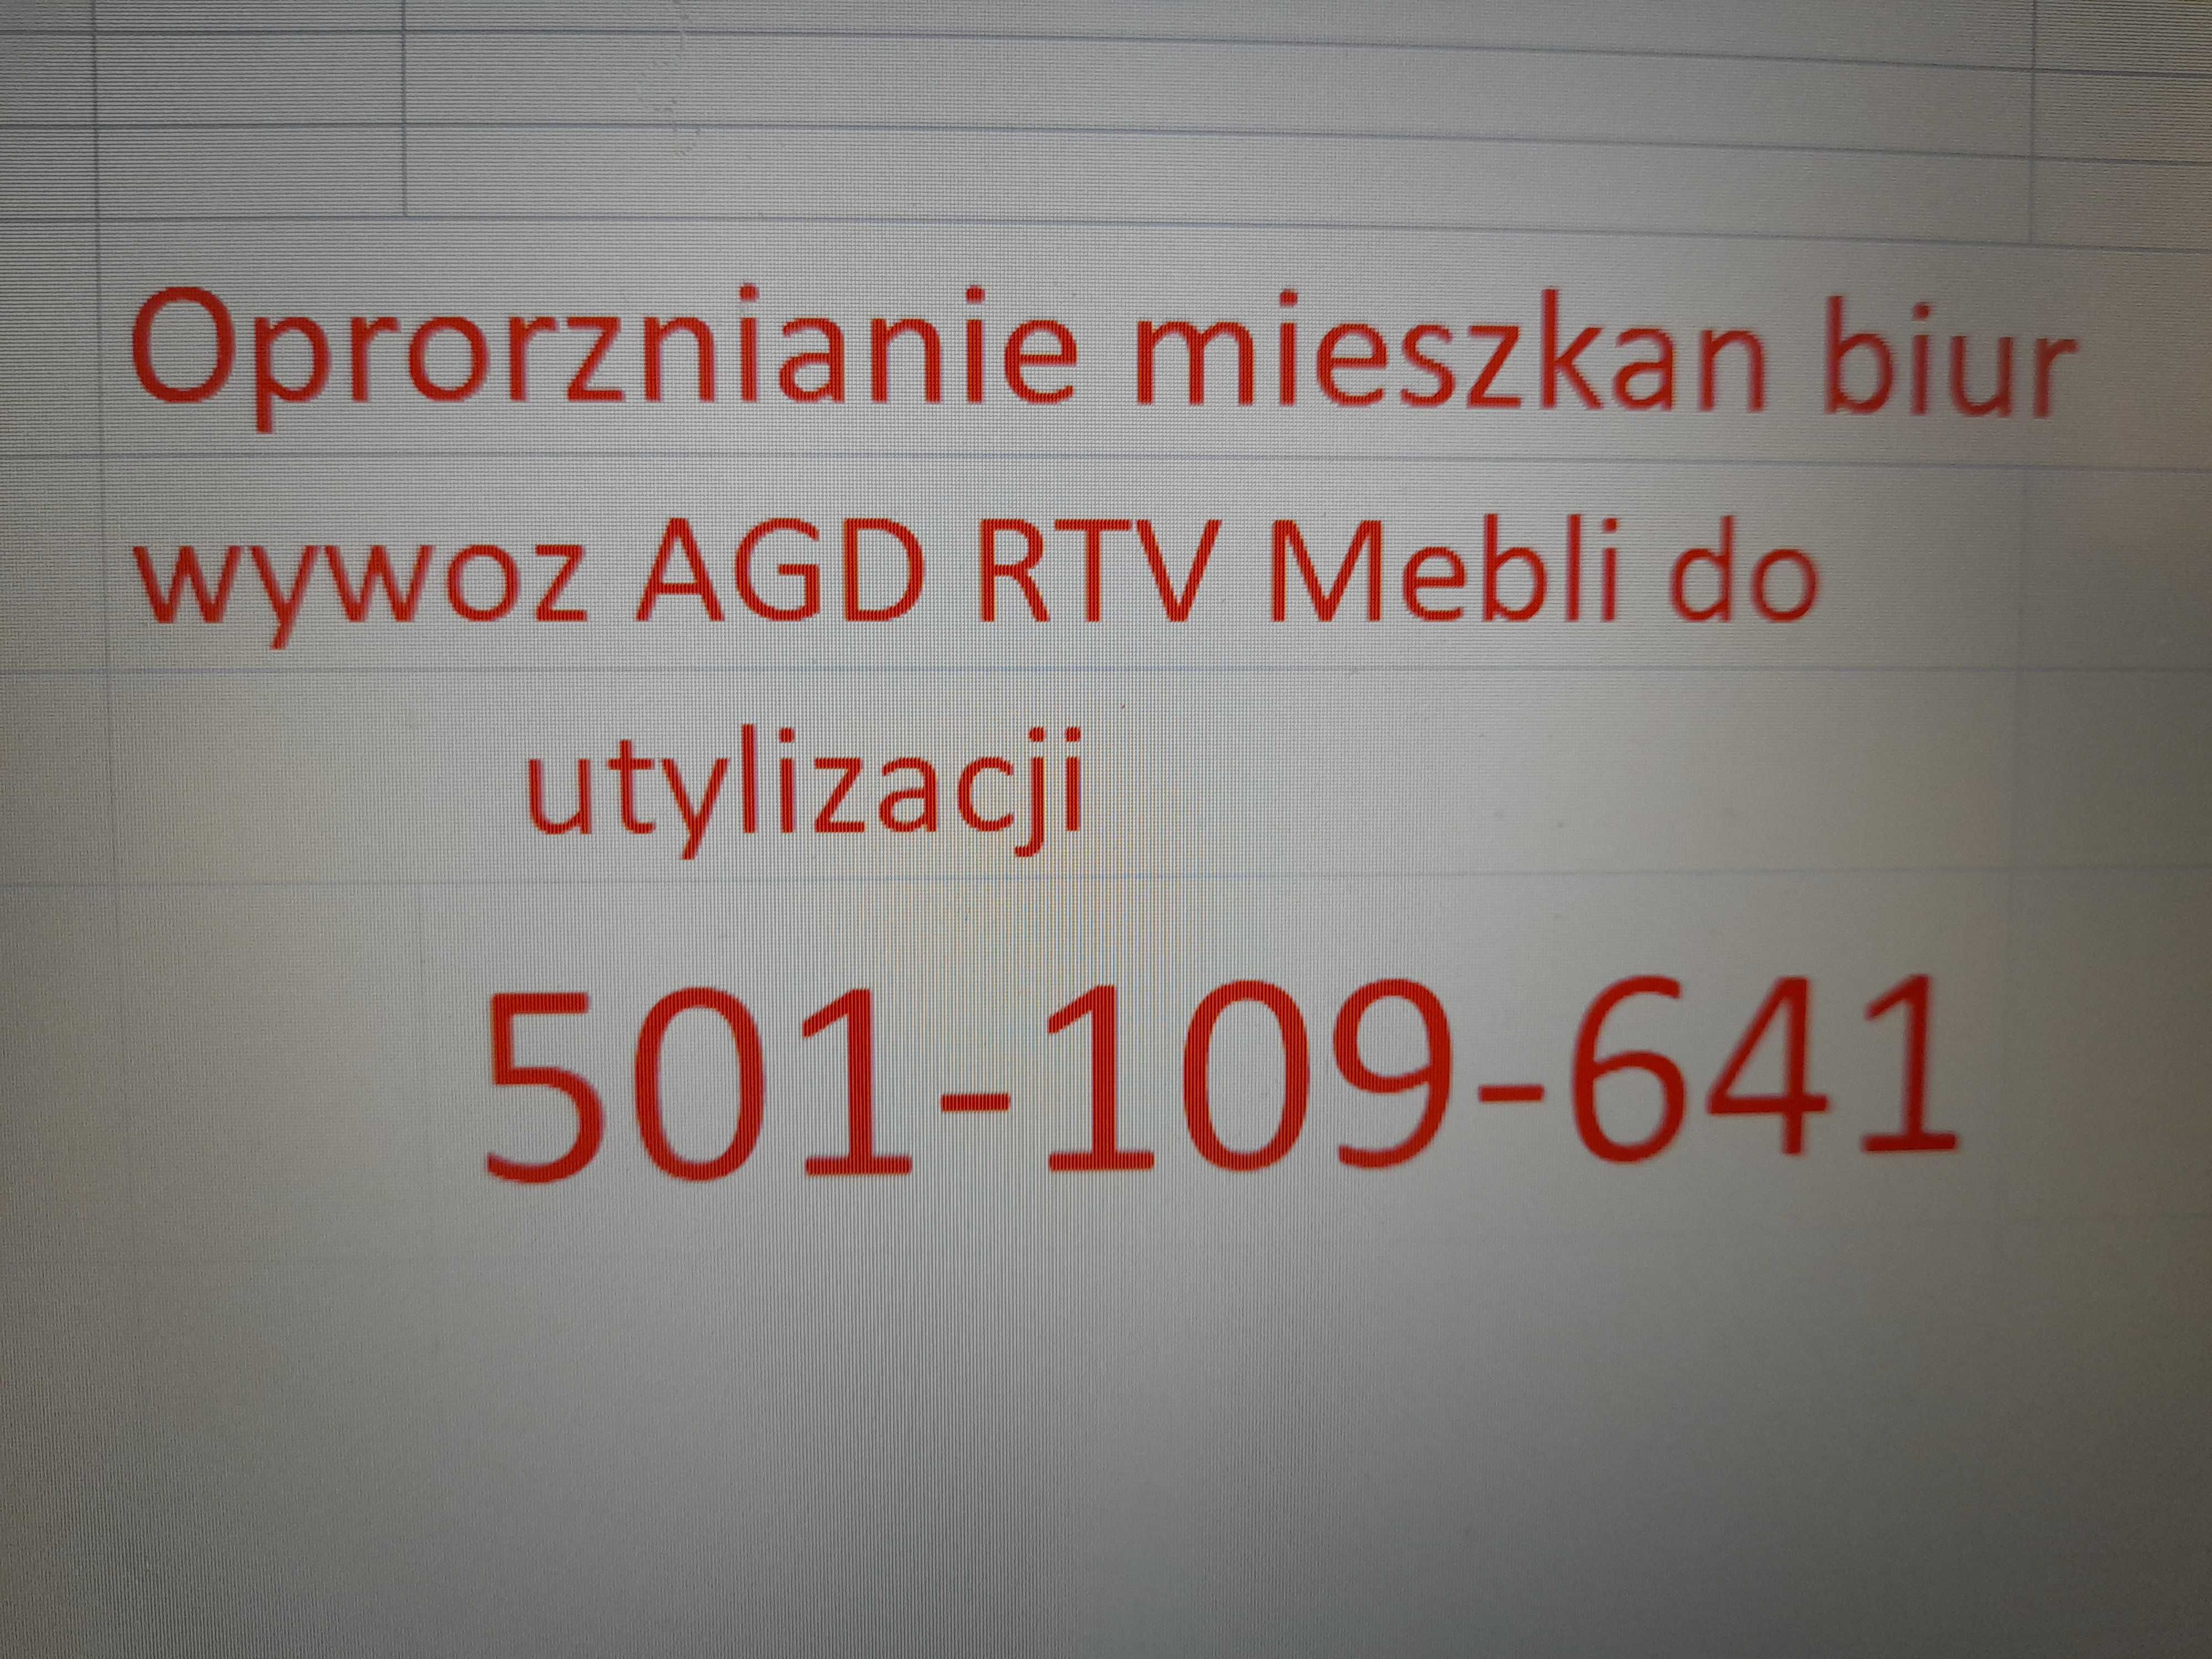 Oproznianie mieszkan biur Wywoz AGD RTV Mebli utylizacja Wodzislaw